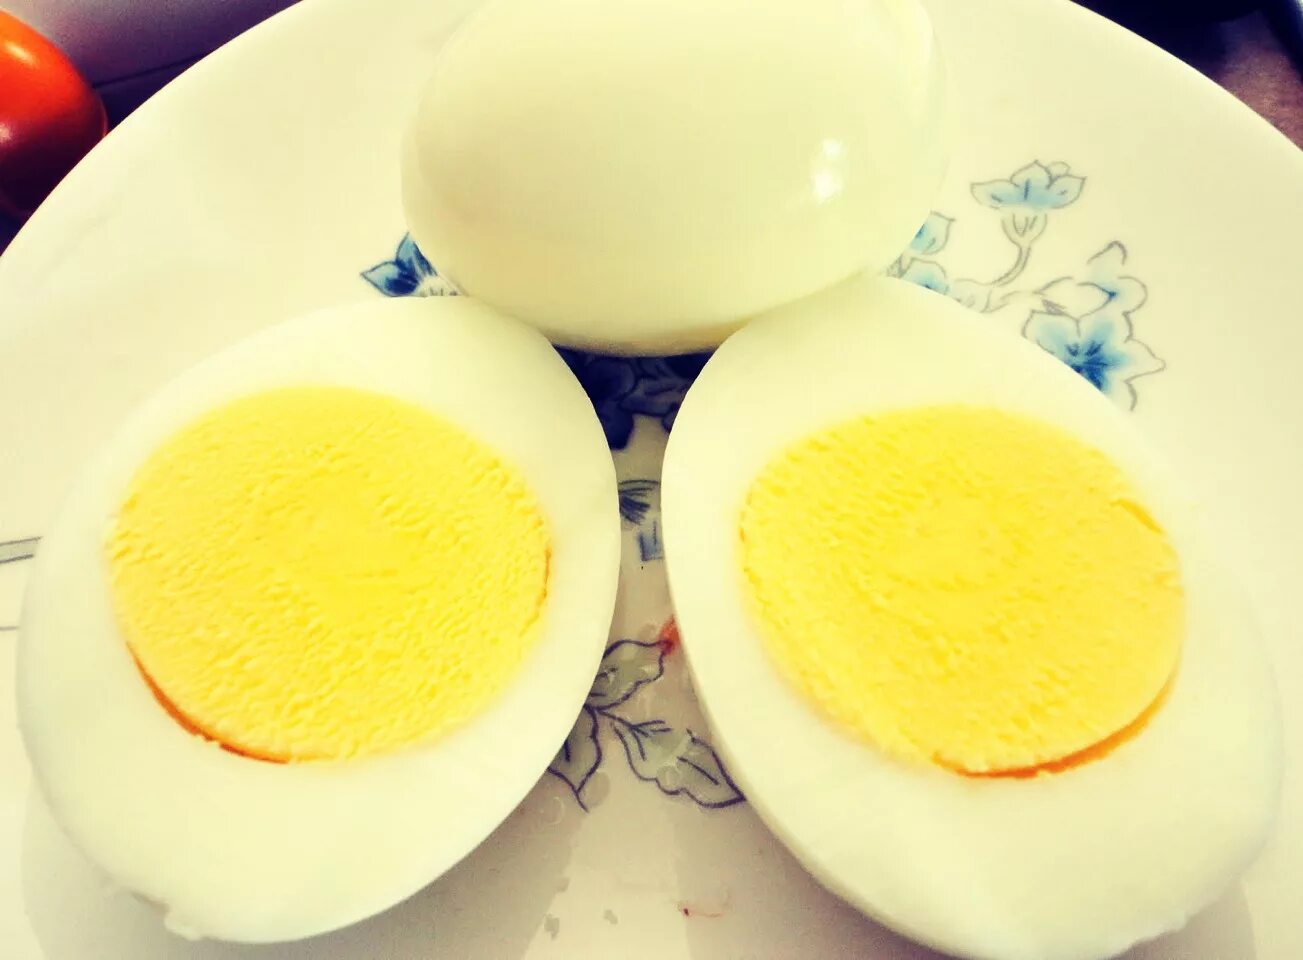 Яйца всмятку в мешочек и вкрутую. Яйца вкрутую. Яйцо в крутую. Яйцо вареное вкрутую. Сон яйцо вареное к чему снится